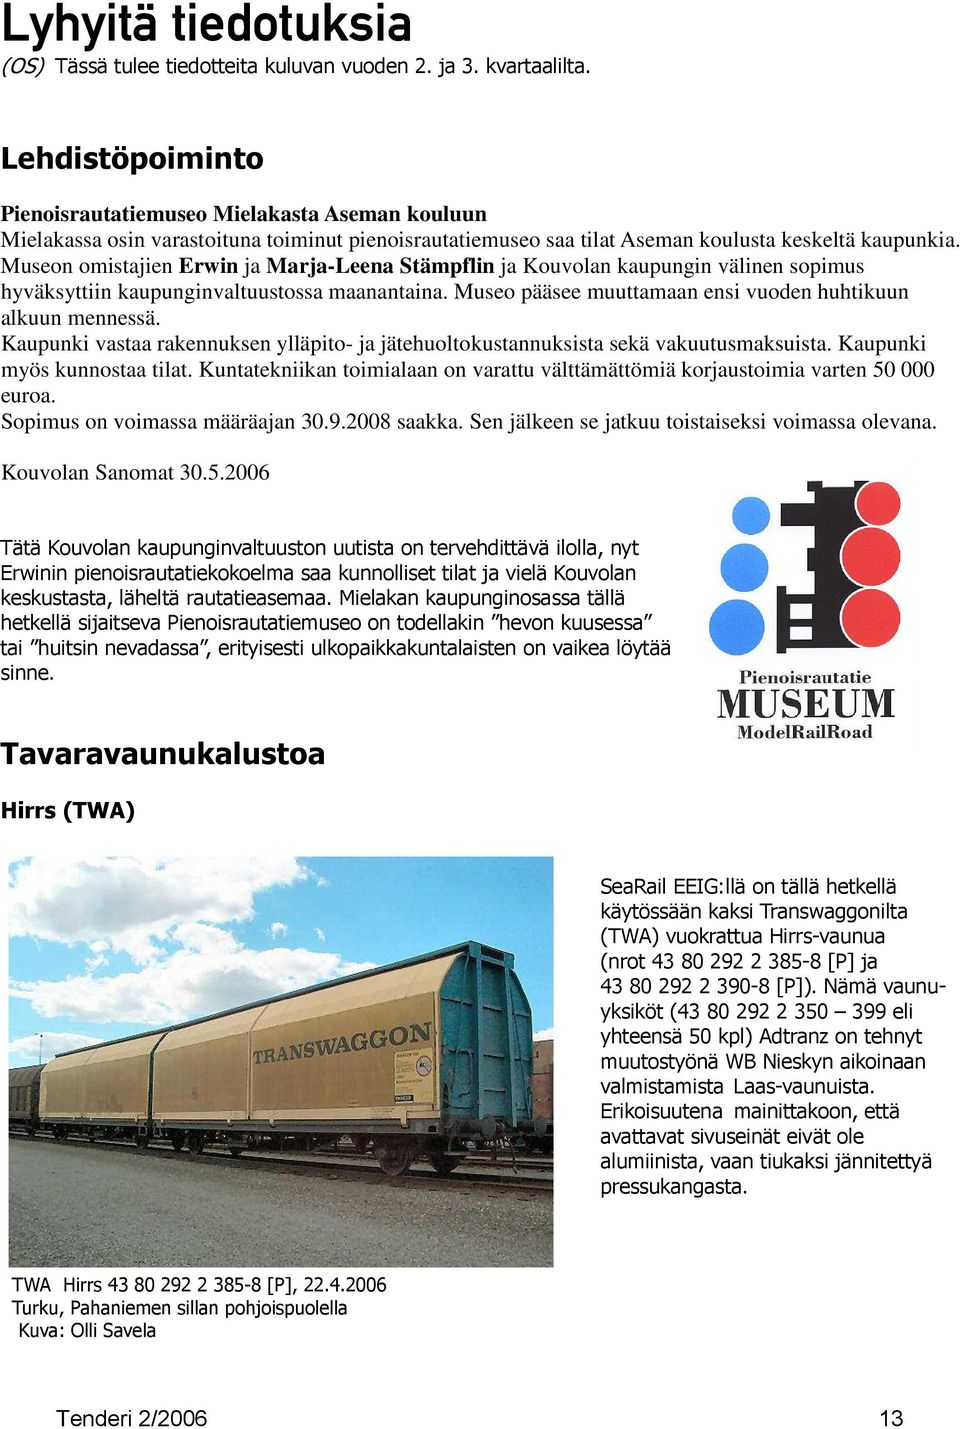 Museon omistajien Erwin ja Marja-Leena Stämpflin ja Kouvolan kaupungin välinen sopimus hyväksyttiin kaupunginvaltuustossa maanantaina. Museo pääsee muuttamaan ensi vuoden huhtikuun alkuun mennessä.